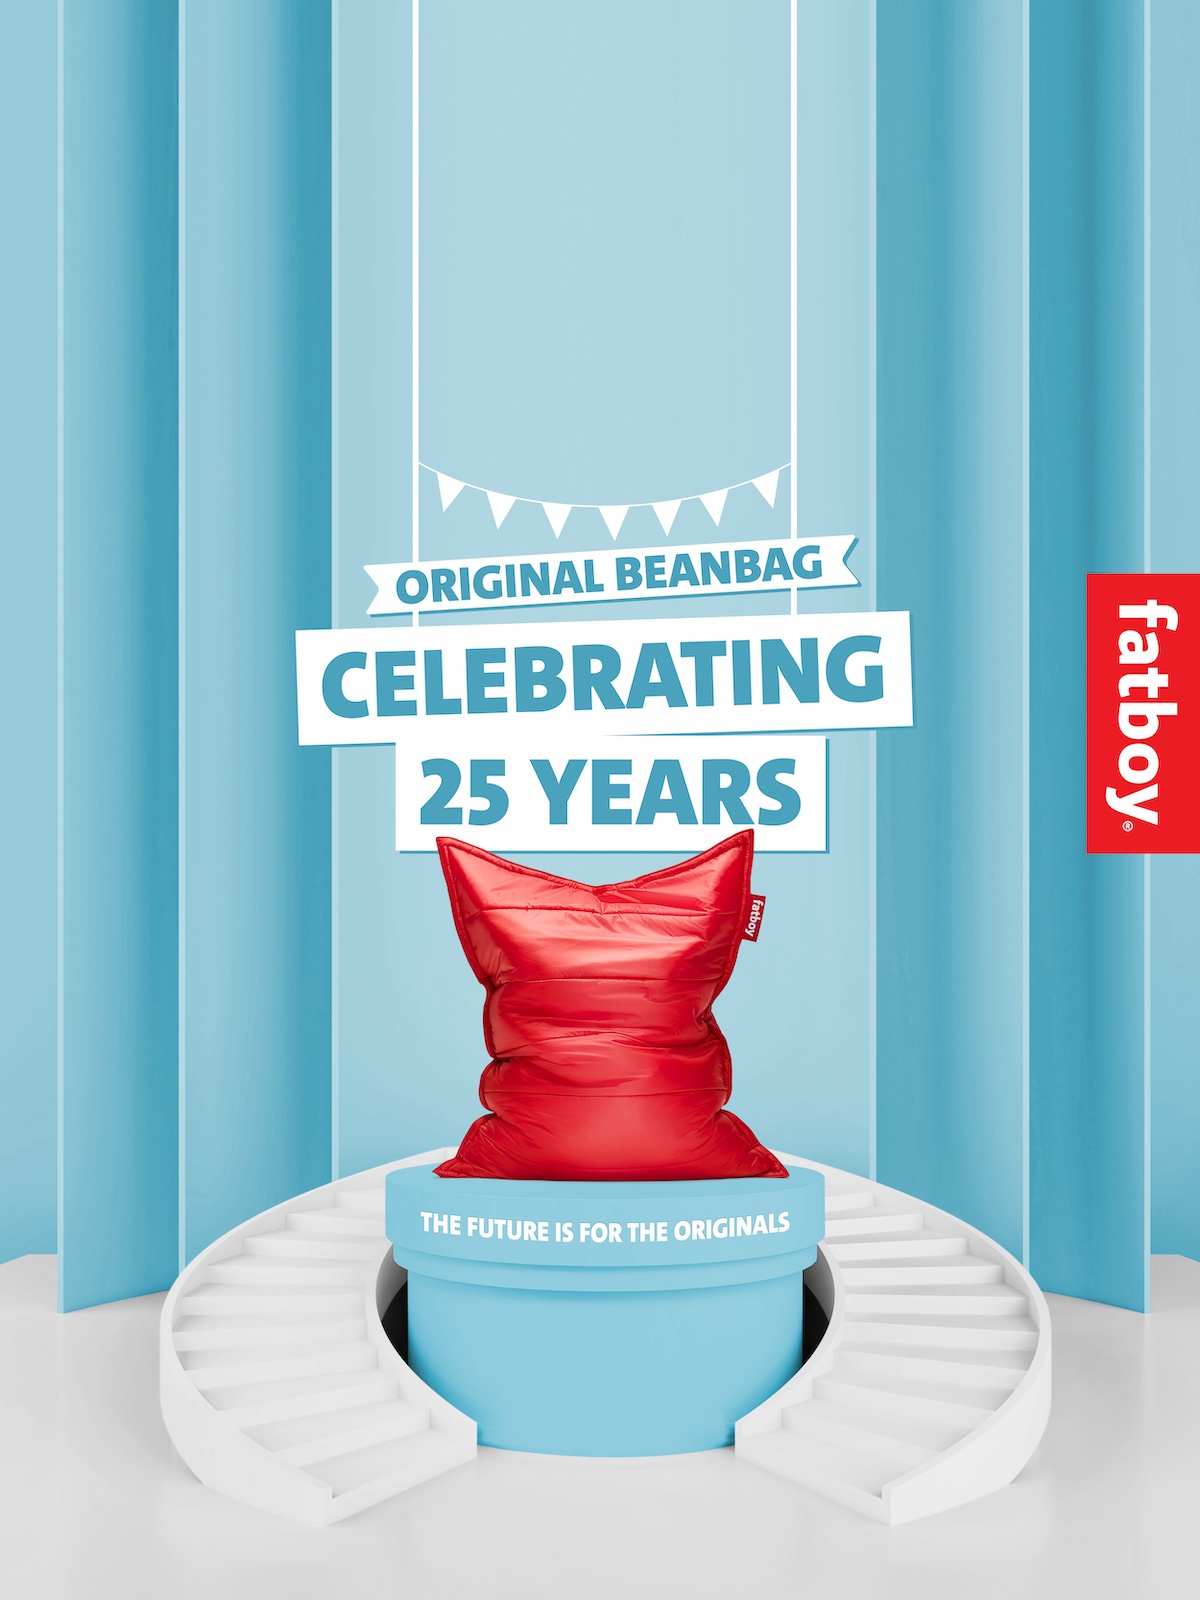 Ein roter Sitzsack auf einem Podest, darüber folgender Text: Original Beanbag. Celebrating 25 Years. The future is for the originals. 